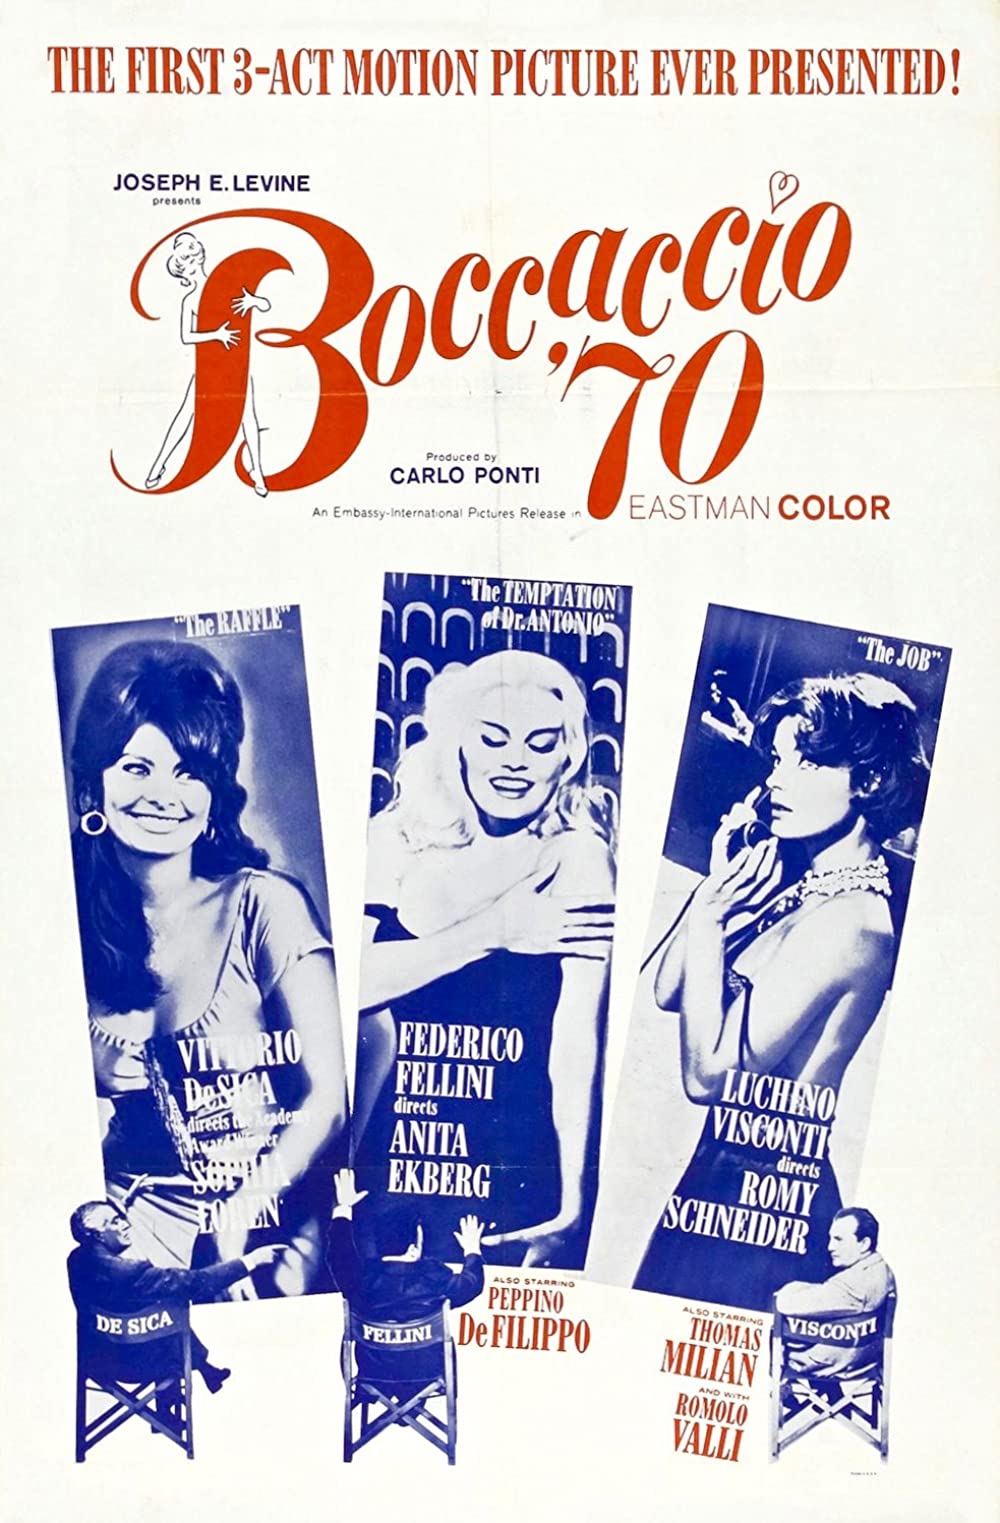 Filmbeschreibung zu Boccaccio '70 (OV)